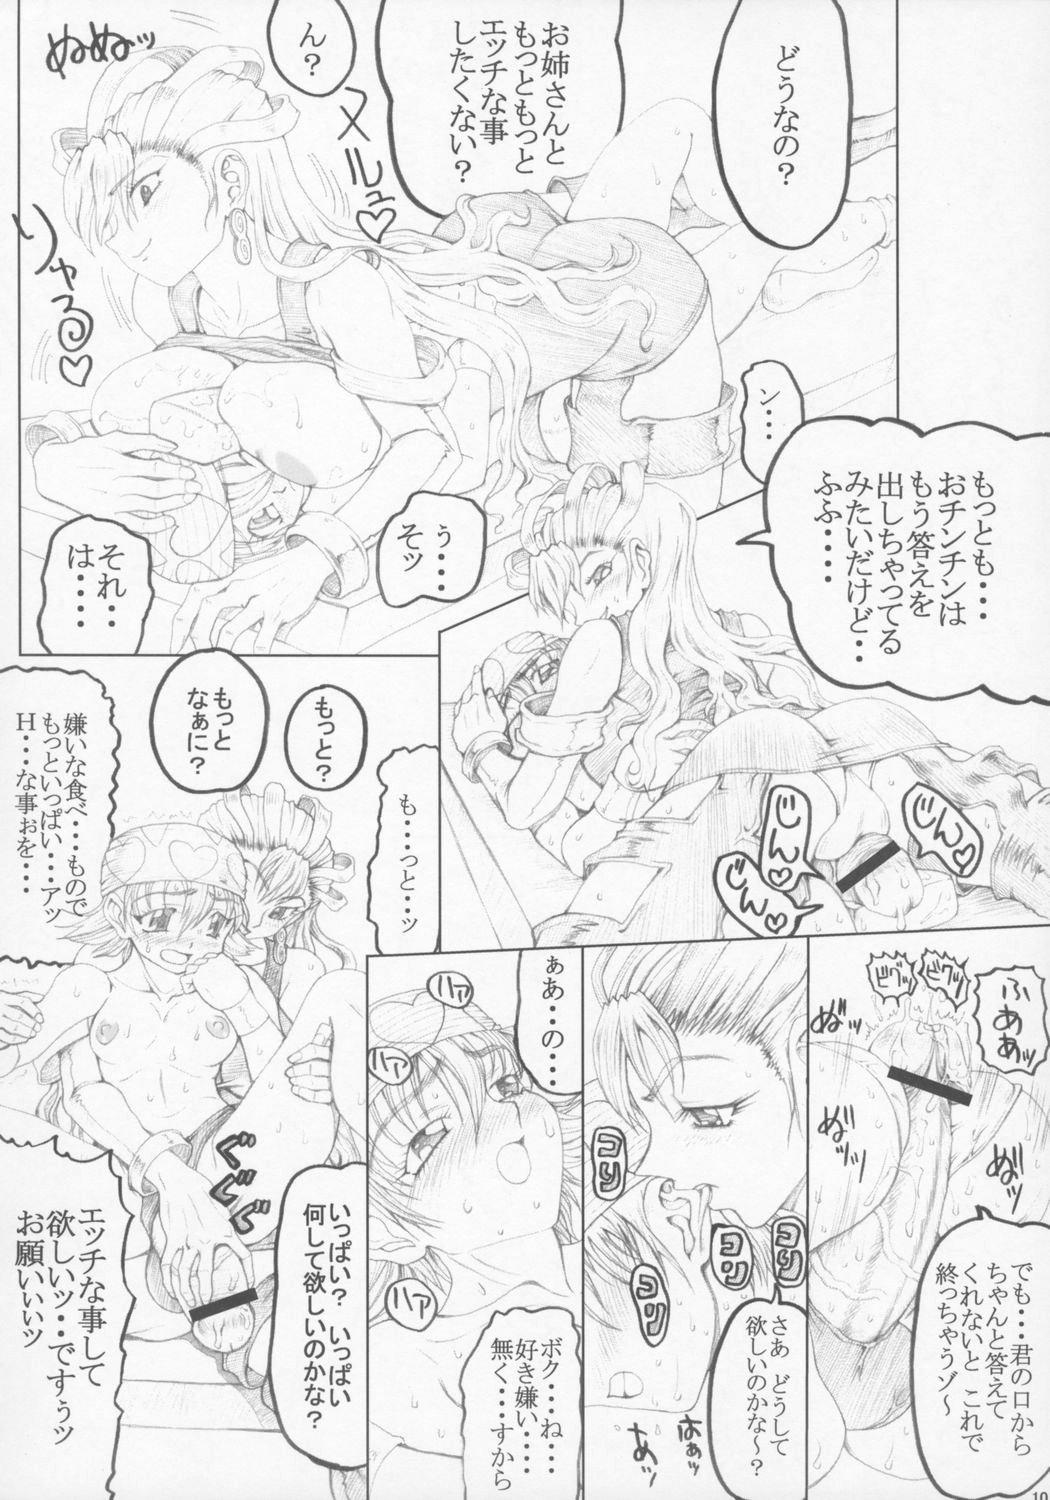 Long Misohito Spooning - Page 8